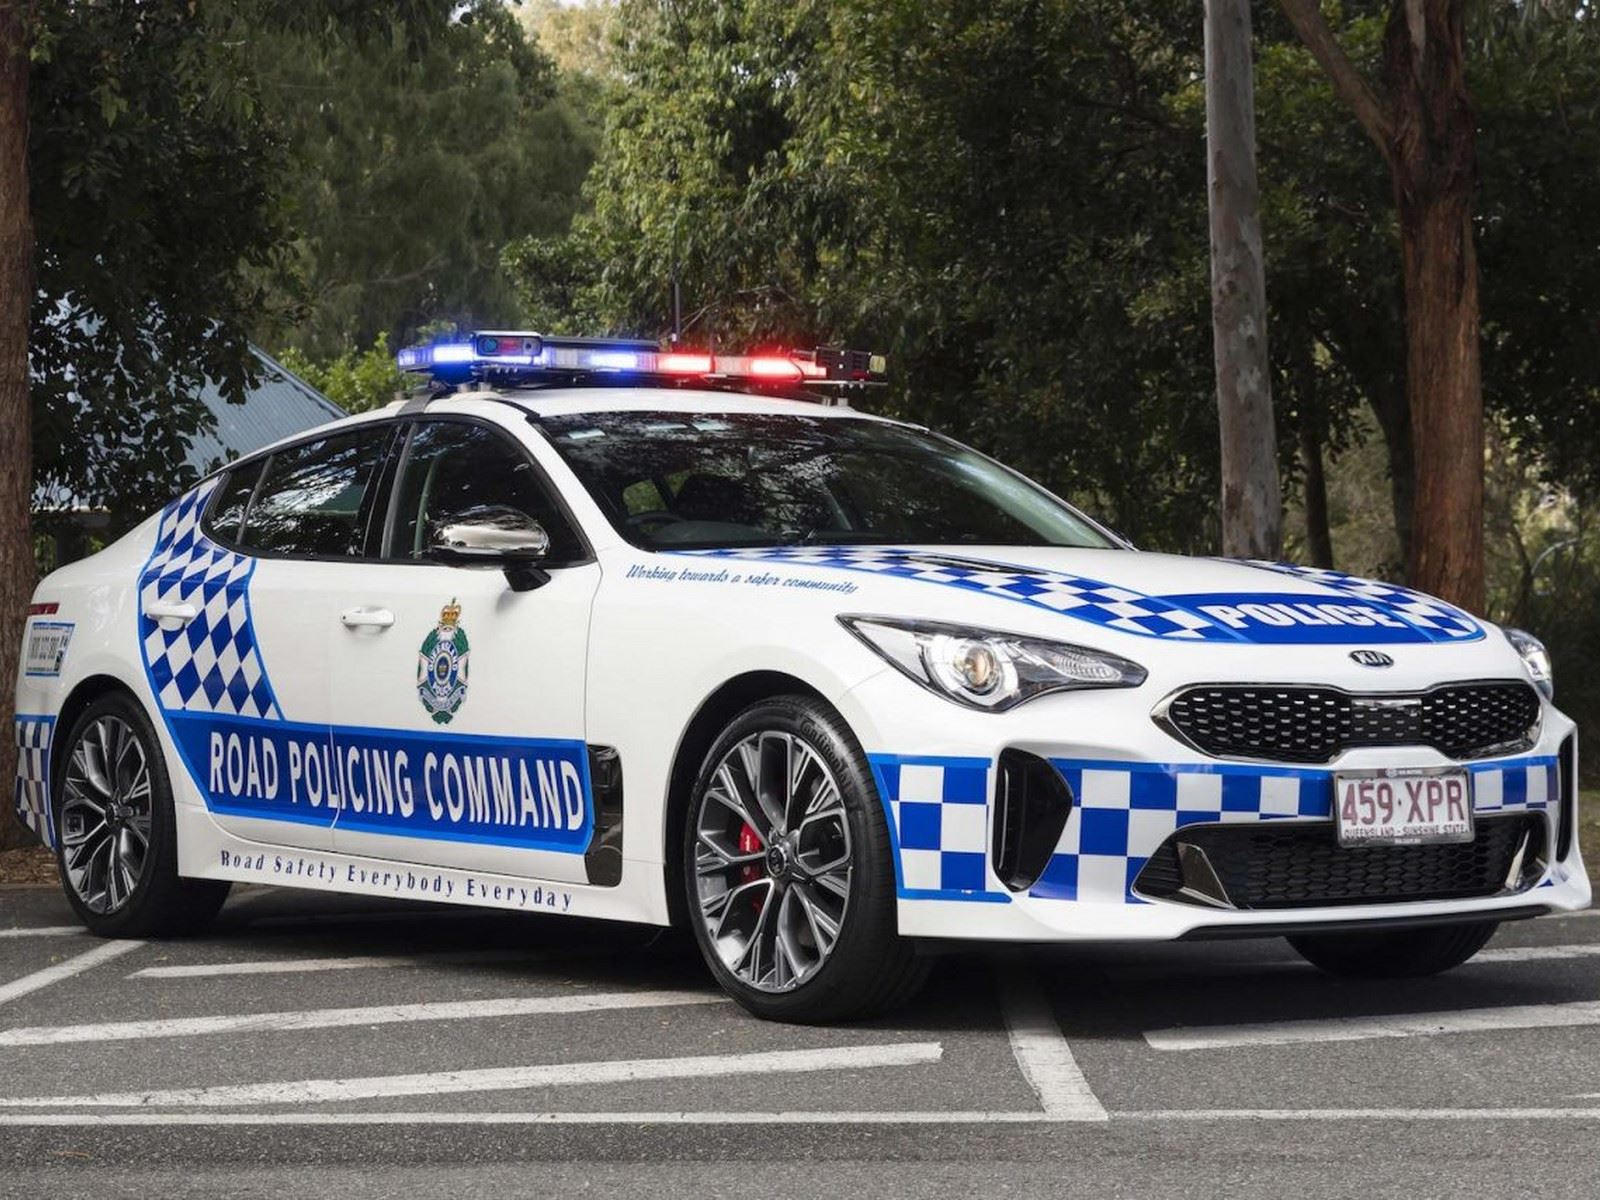 "بالصور" أكثر 10 سيارات شرطة تميزا حول العالم 6